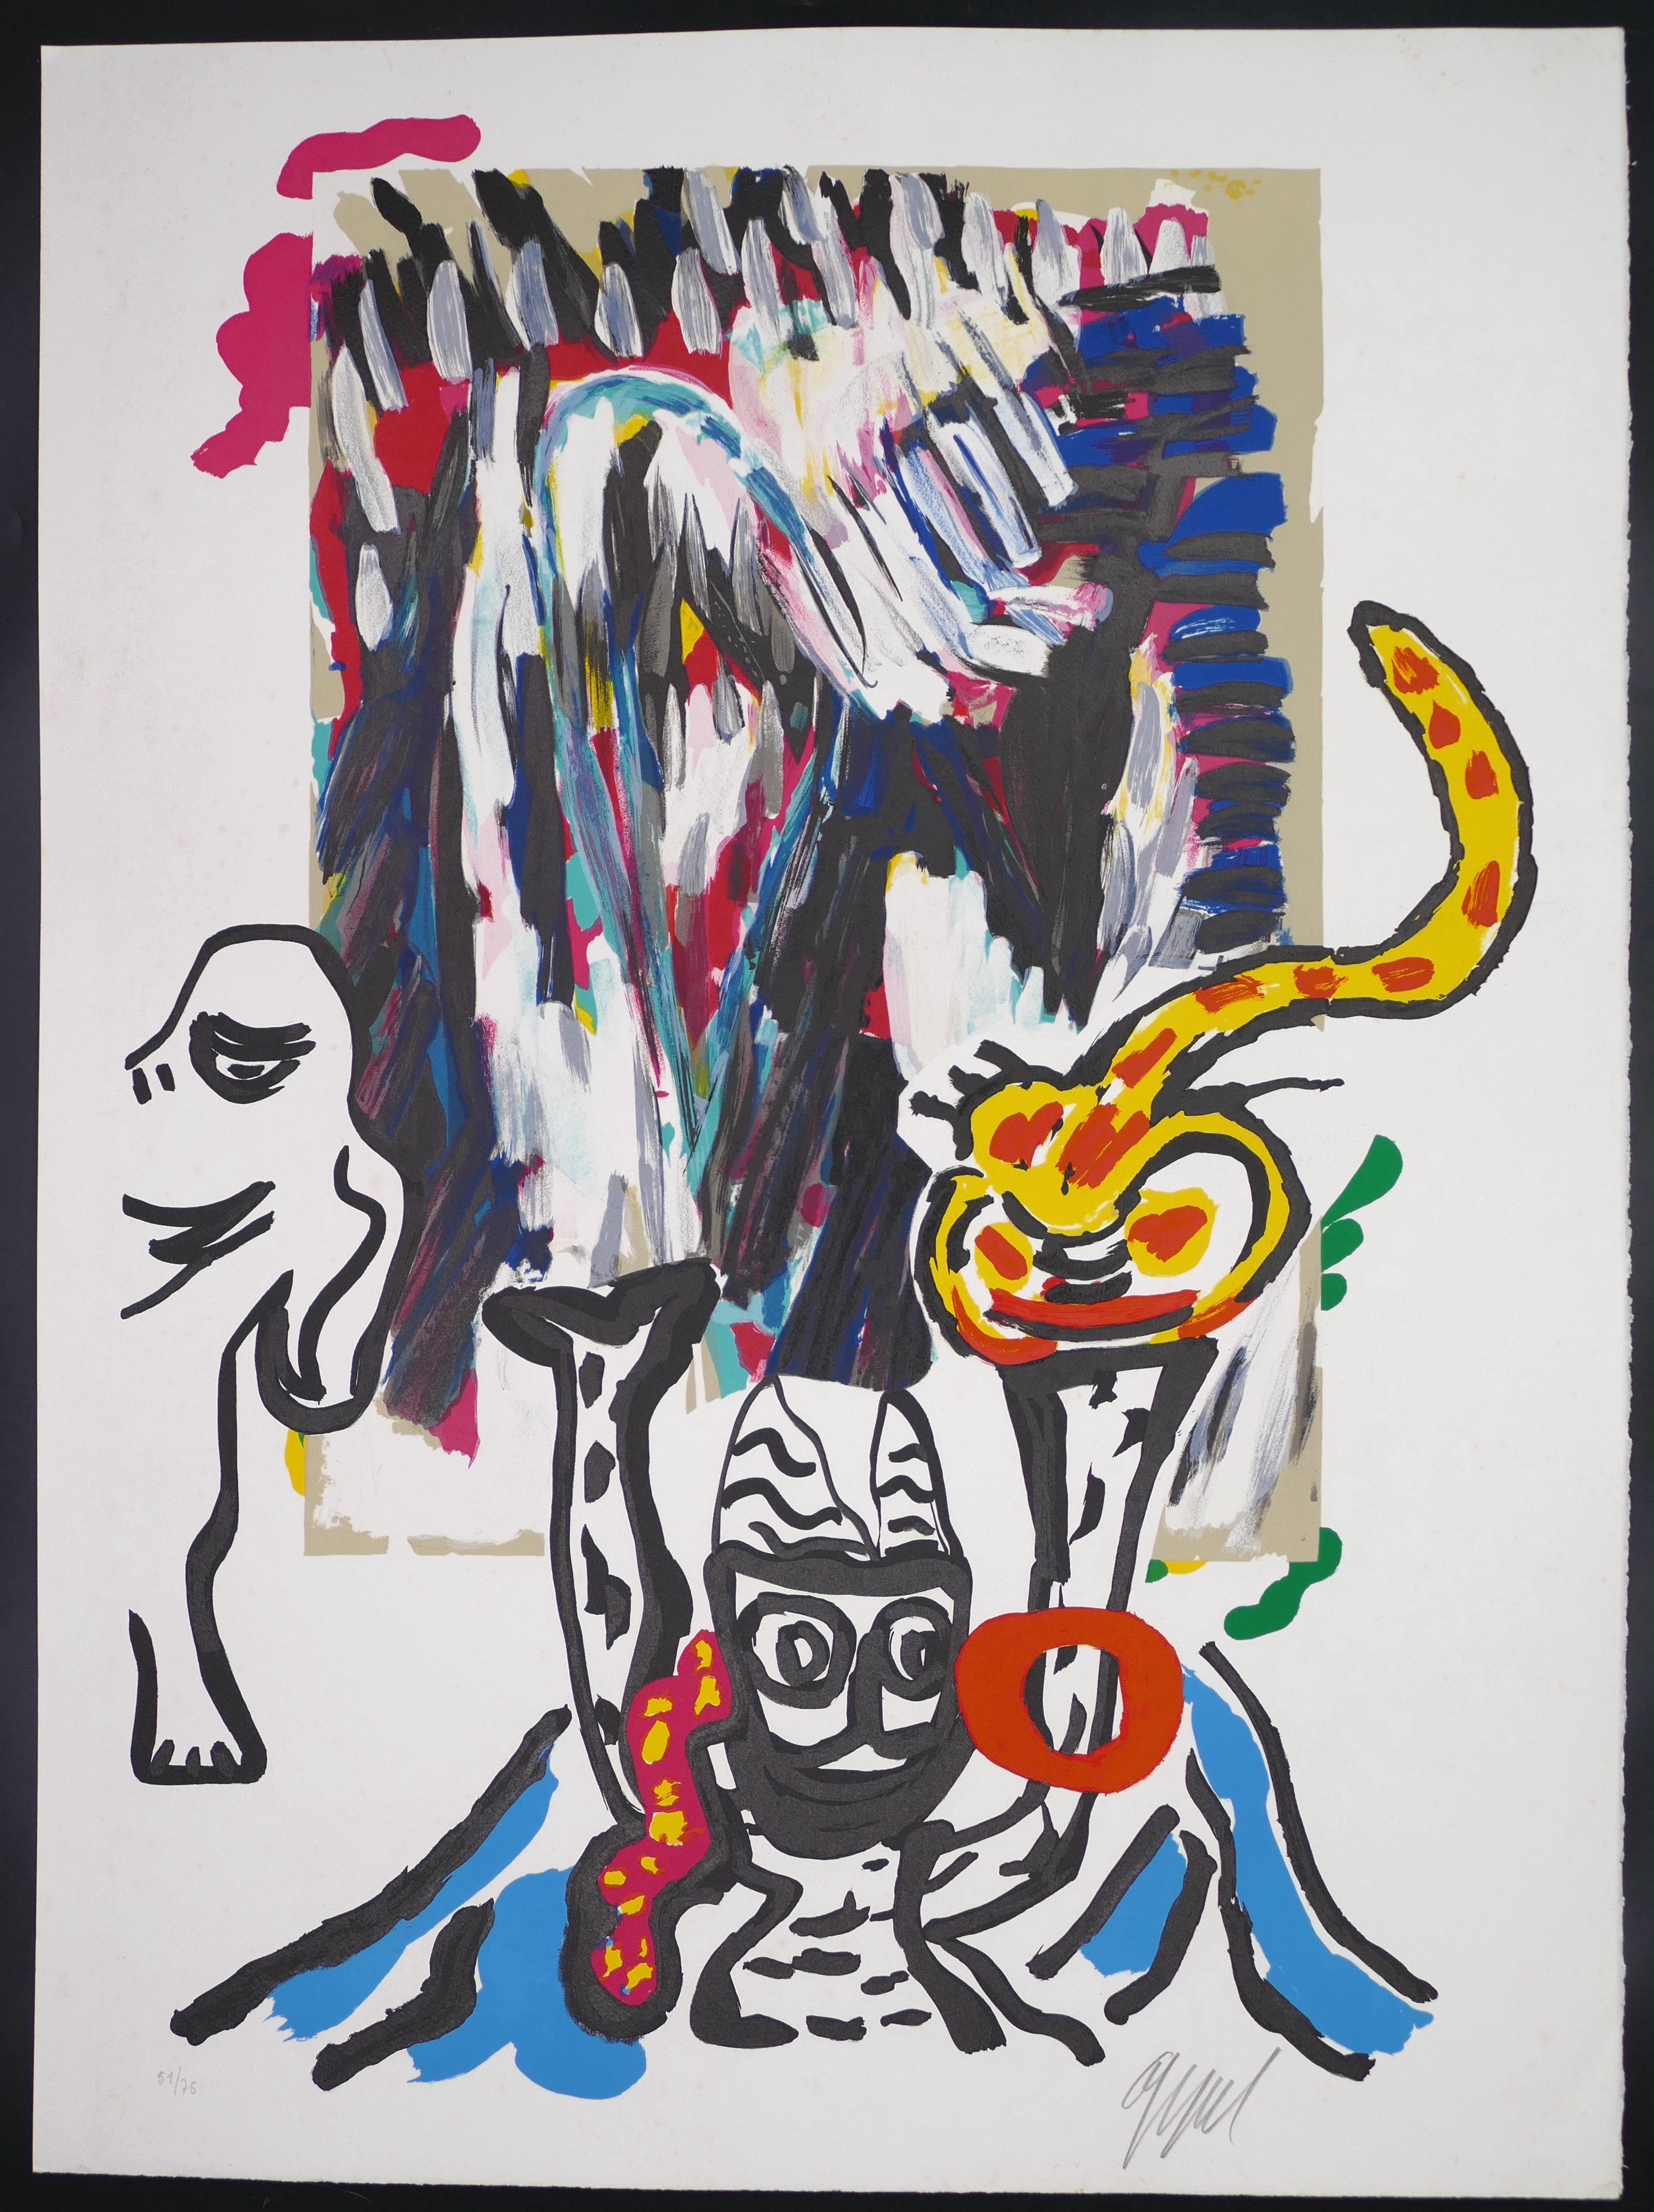 Tantrika est une œuvre d'art contemporain originale réalisée par Karel Appel.  (Amsterdam, 1921 - Zurich, 2006) en 1985

Signé à la main au crayon dans la marge inférieure droite au crayon : Appel.

Numéroté au crayon dans le coin inférieur gauche :